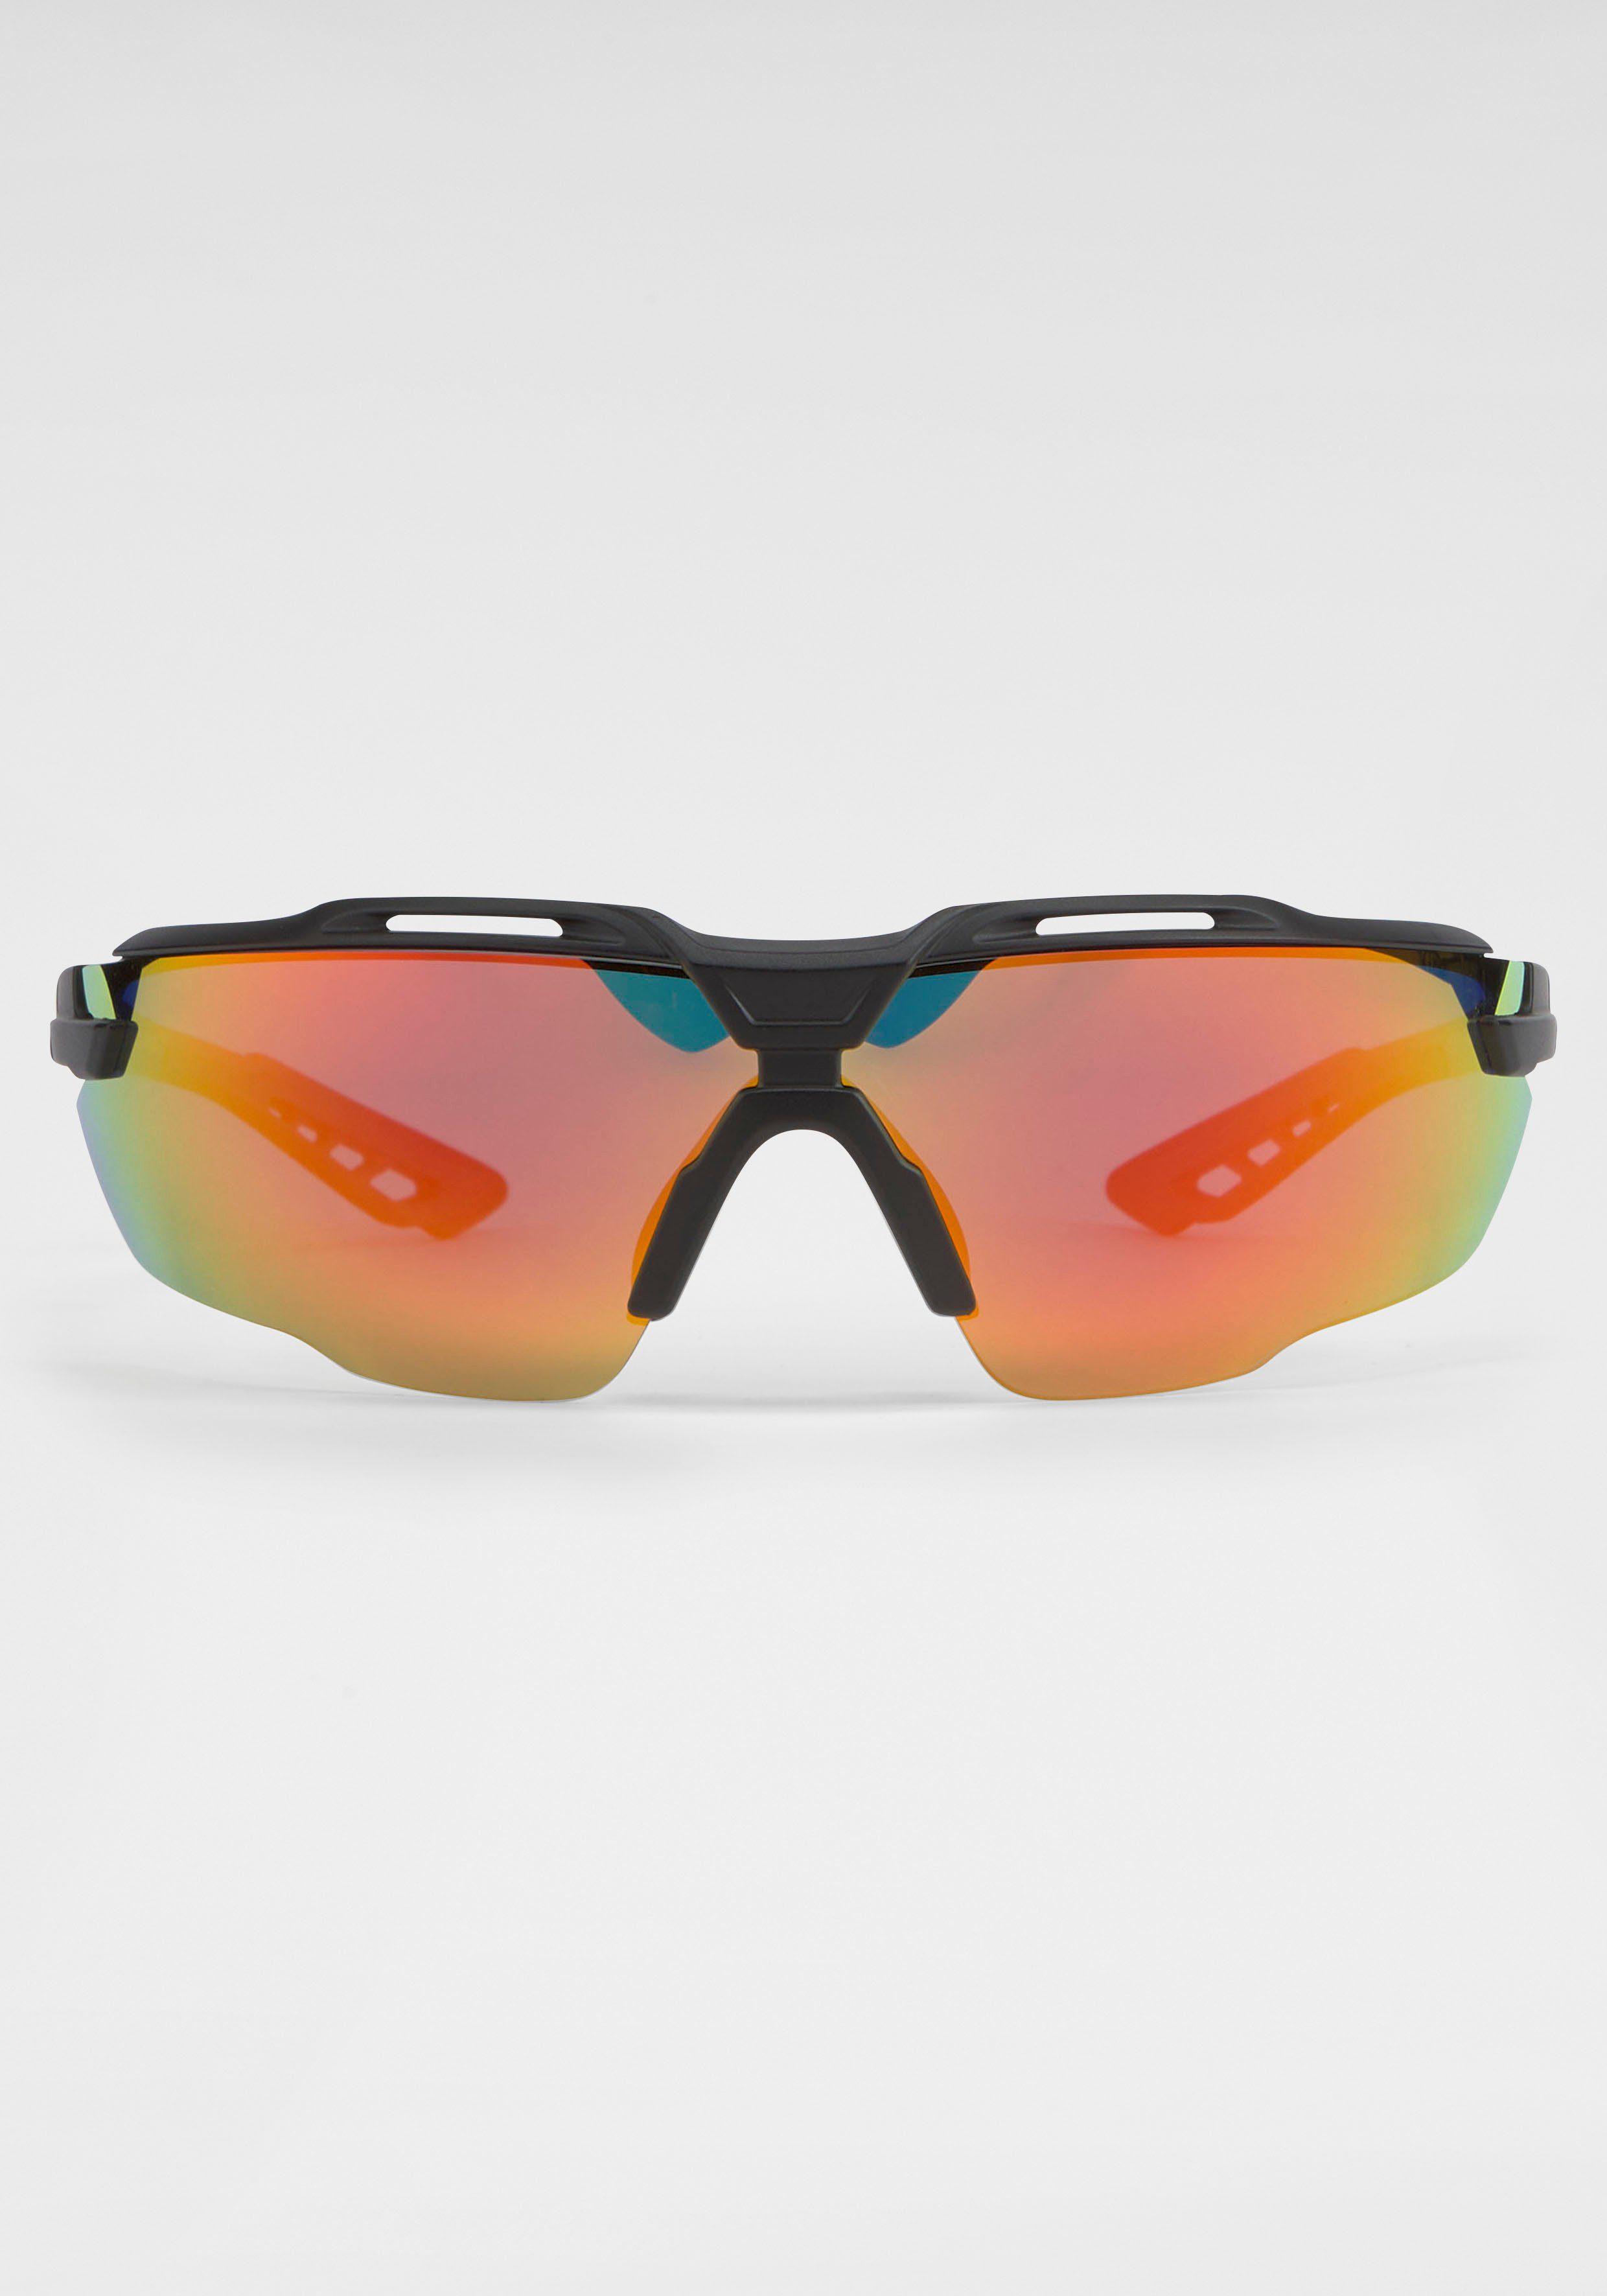 BACK IN BLACK gebogenen mit Sonnenbrille schwarz-orange Eyewear Gläsern